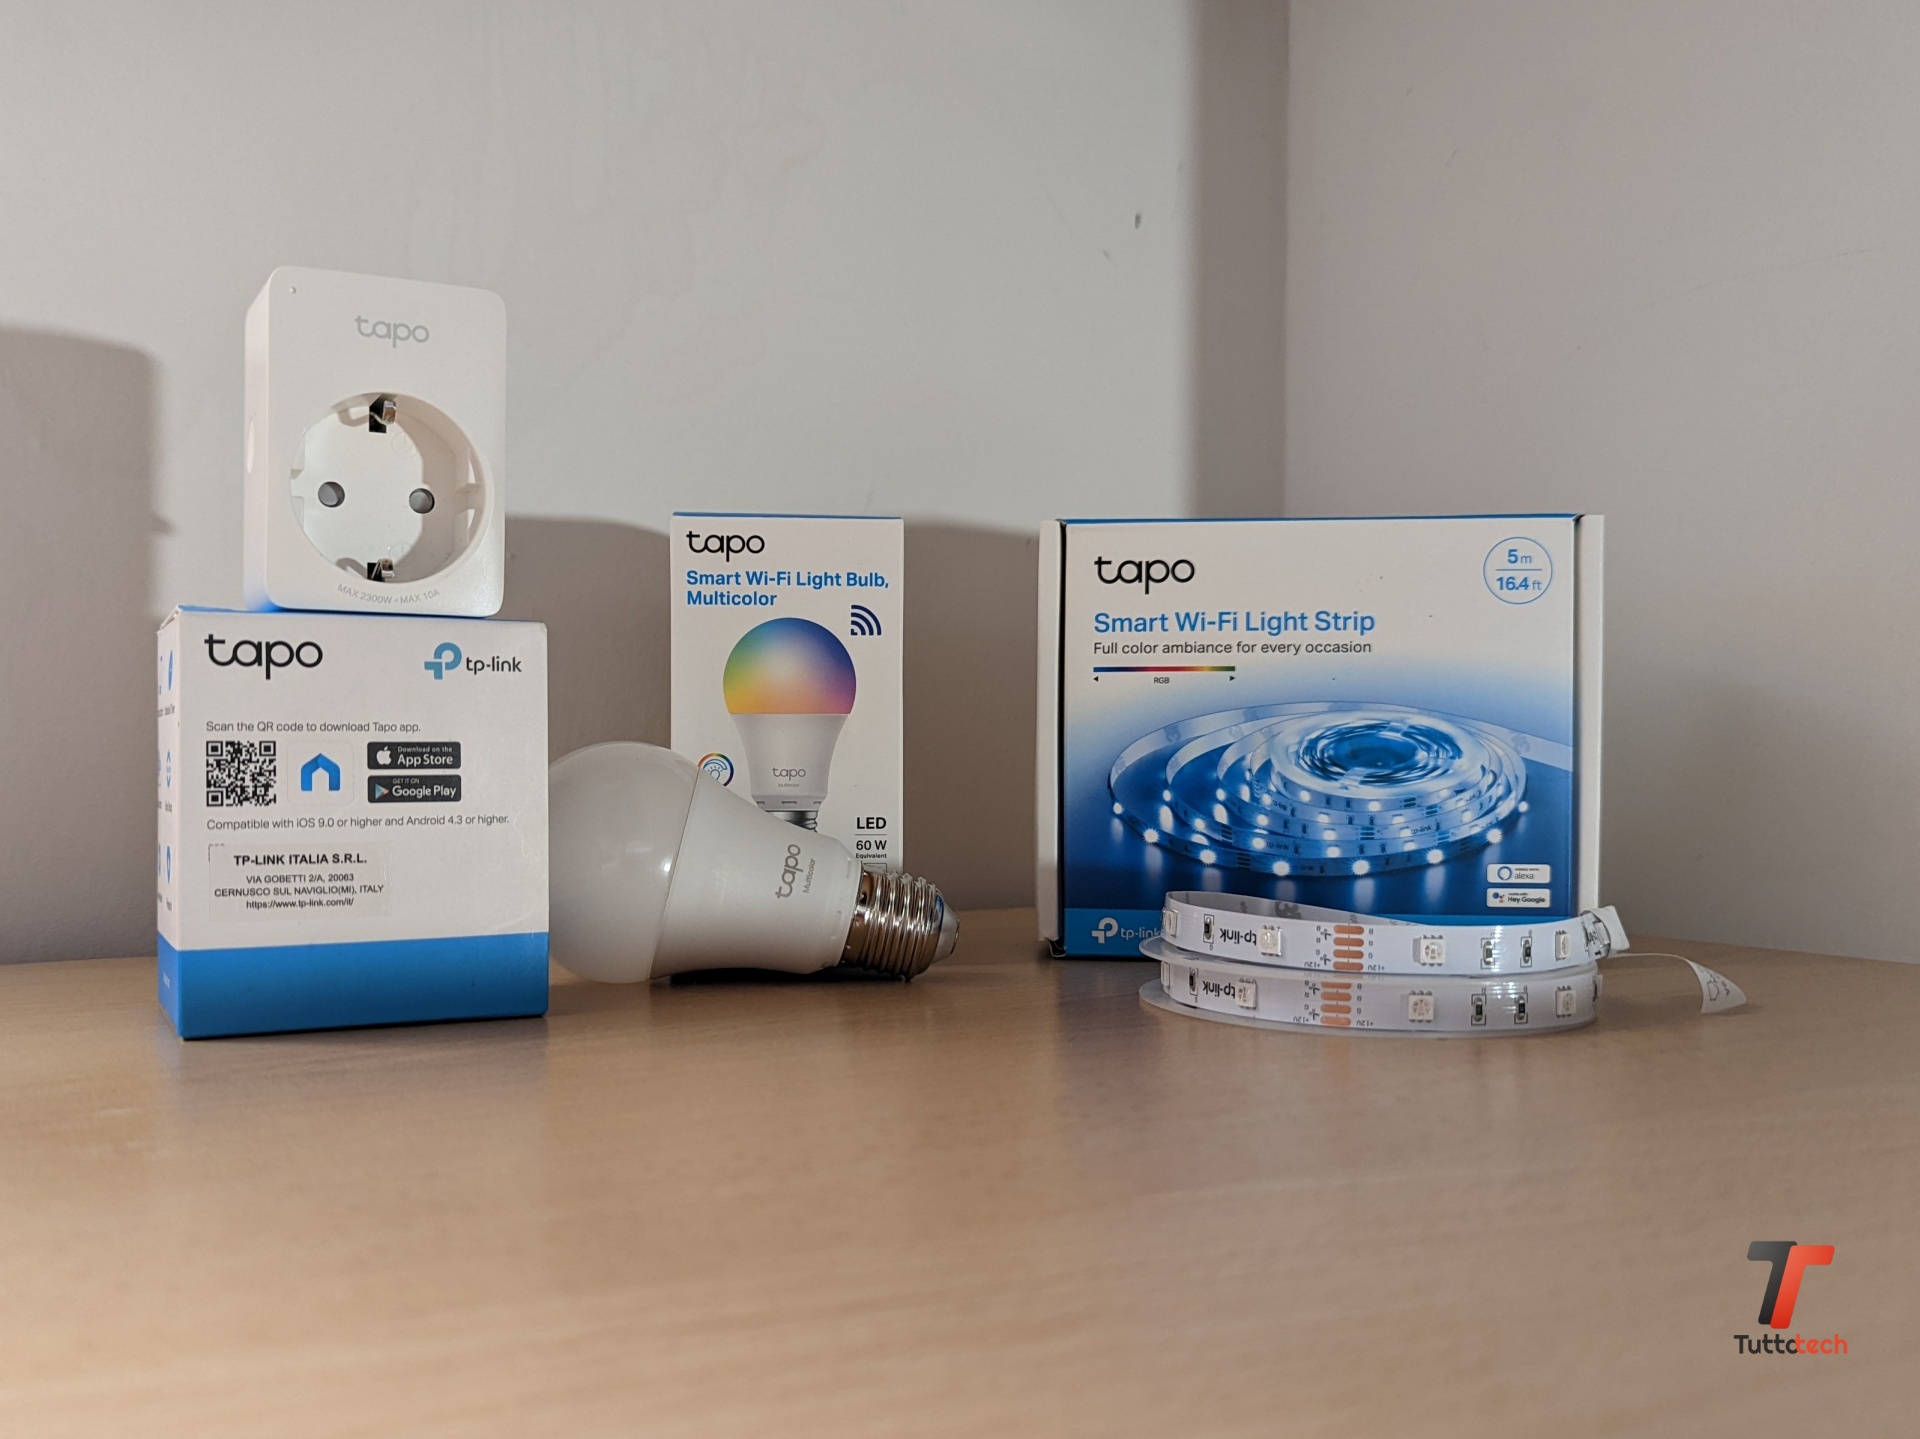 Recensione ecosistema TP-Link Tapo: lampadina smart, smart plug, strip di  LED e telecamere di sicurezza per trasformare la tua casa 